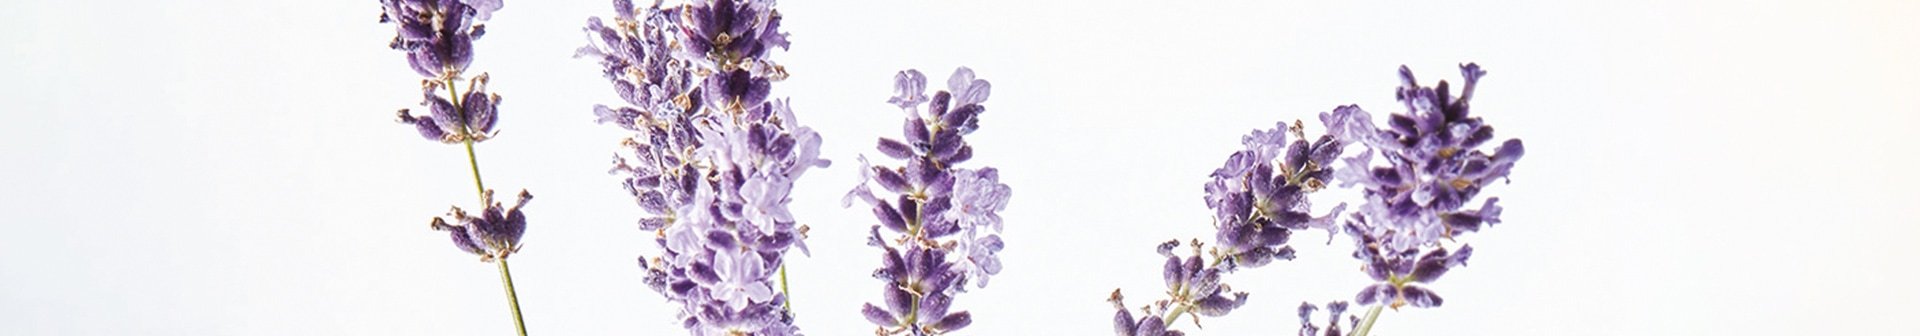 Lavendelblüten - Detailansicht